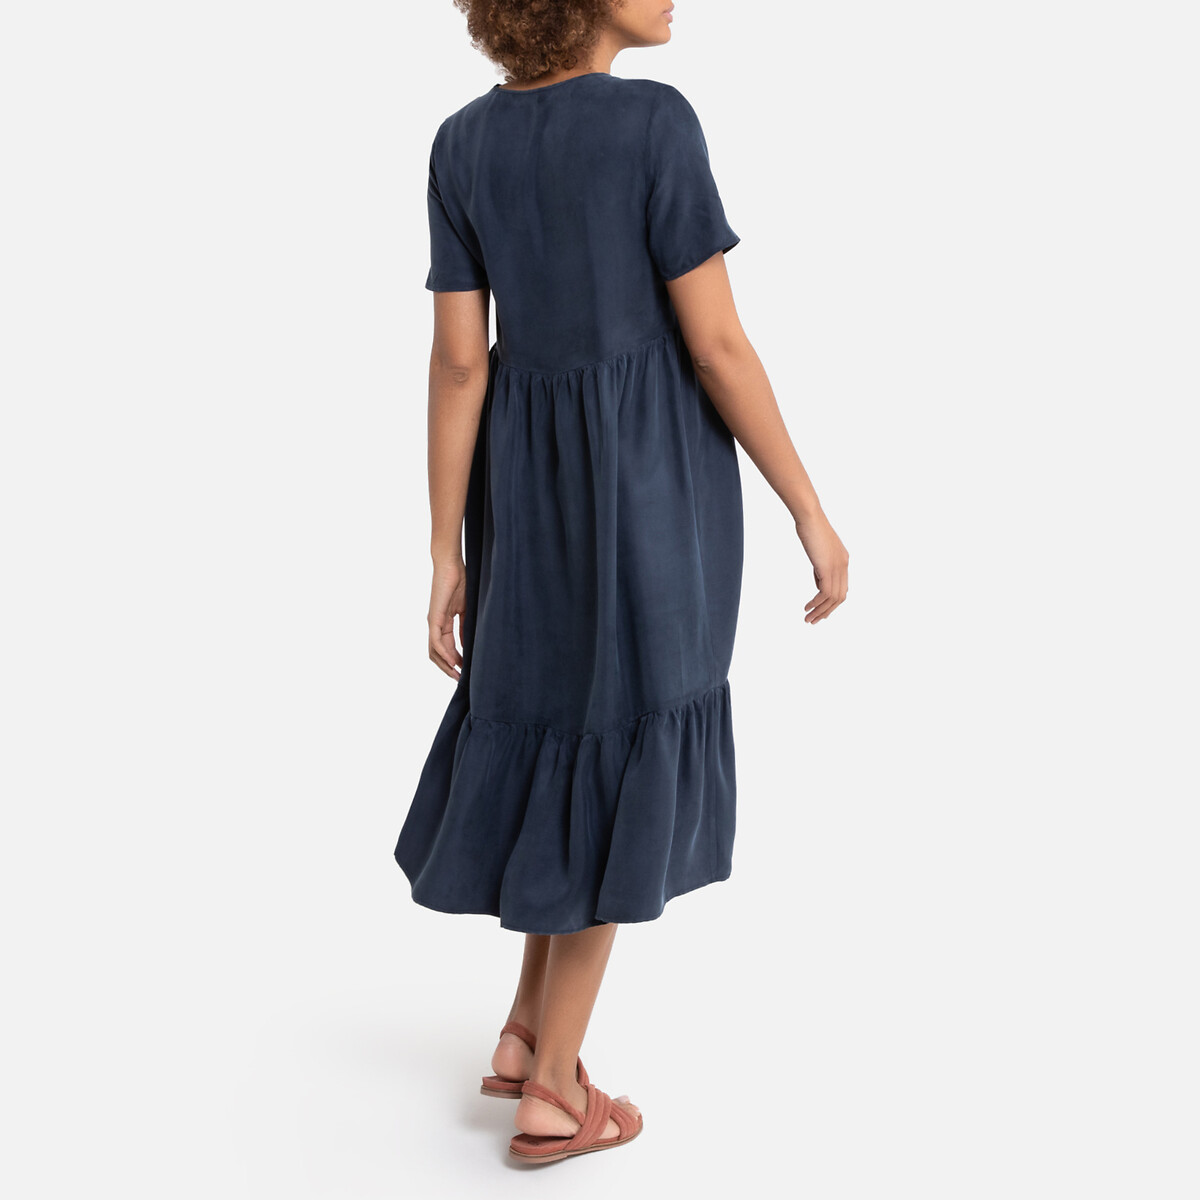 Платье La Redoute С V-образным вырезом с короткими рукавами средней длины 38 (FR) - 44 (RUS) синий, размер 38 (FR) - 44 (RUS) С V-образным вырезом с короткими рукавами средней длины 38 (FR) - 44 (RUS) синий - фото 4